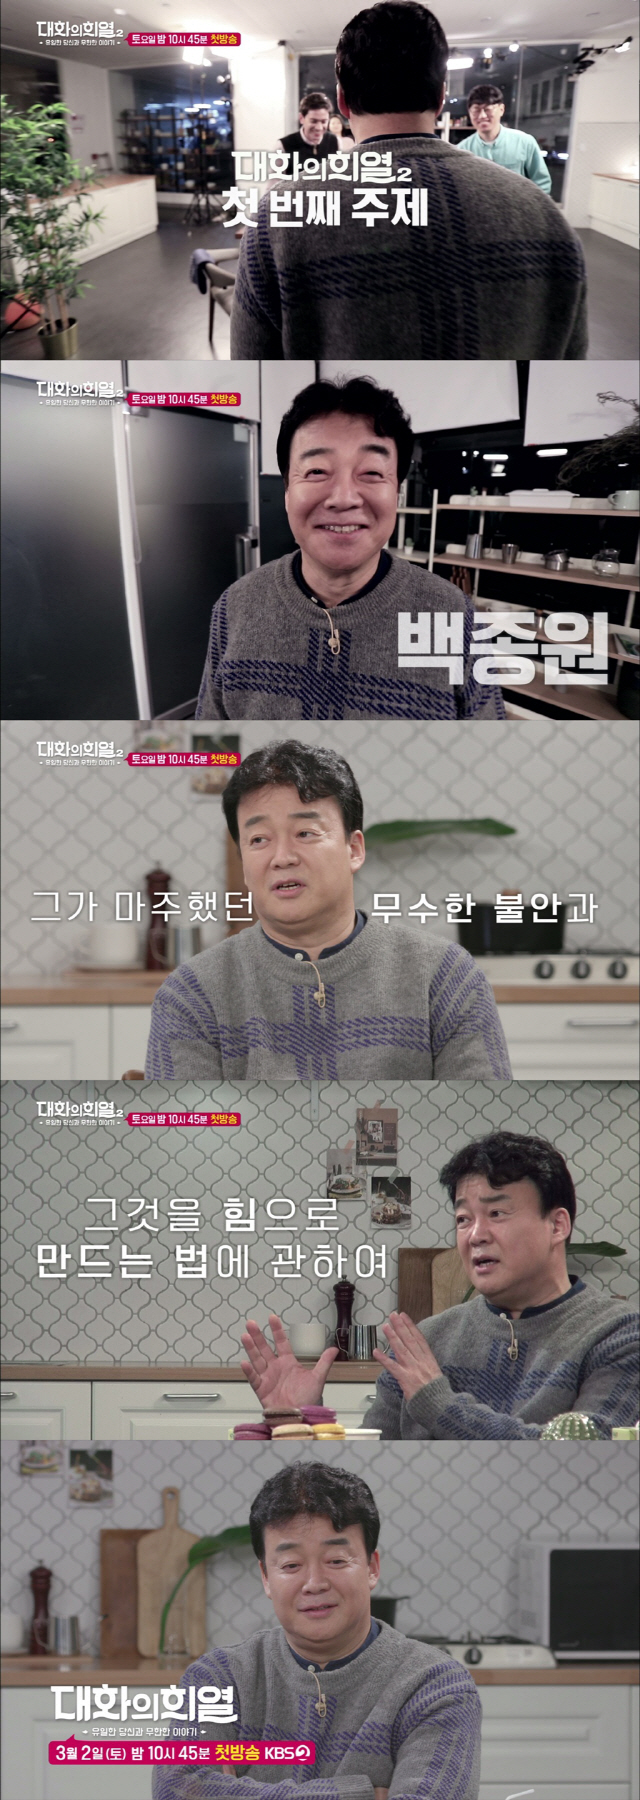 ‘대화의 희열’, 첫 게스트 백종원 등장 ‘시즌2 예고’ 공개